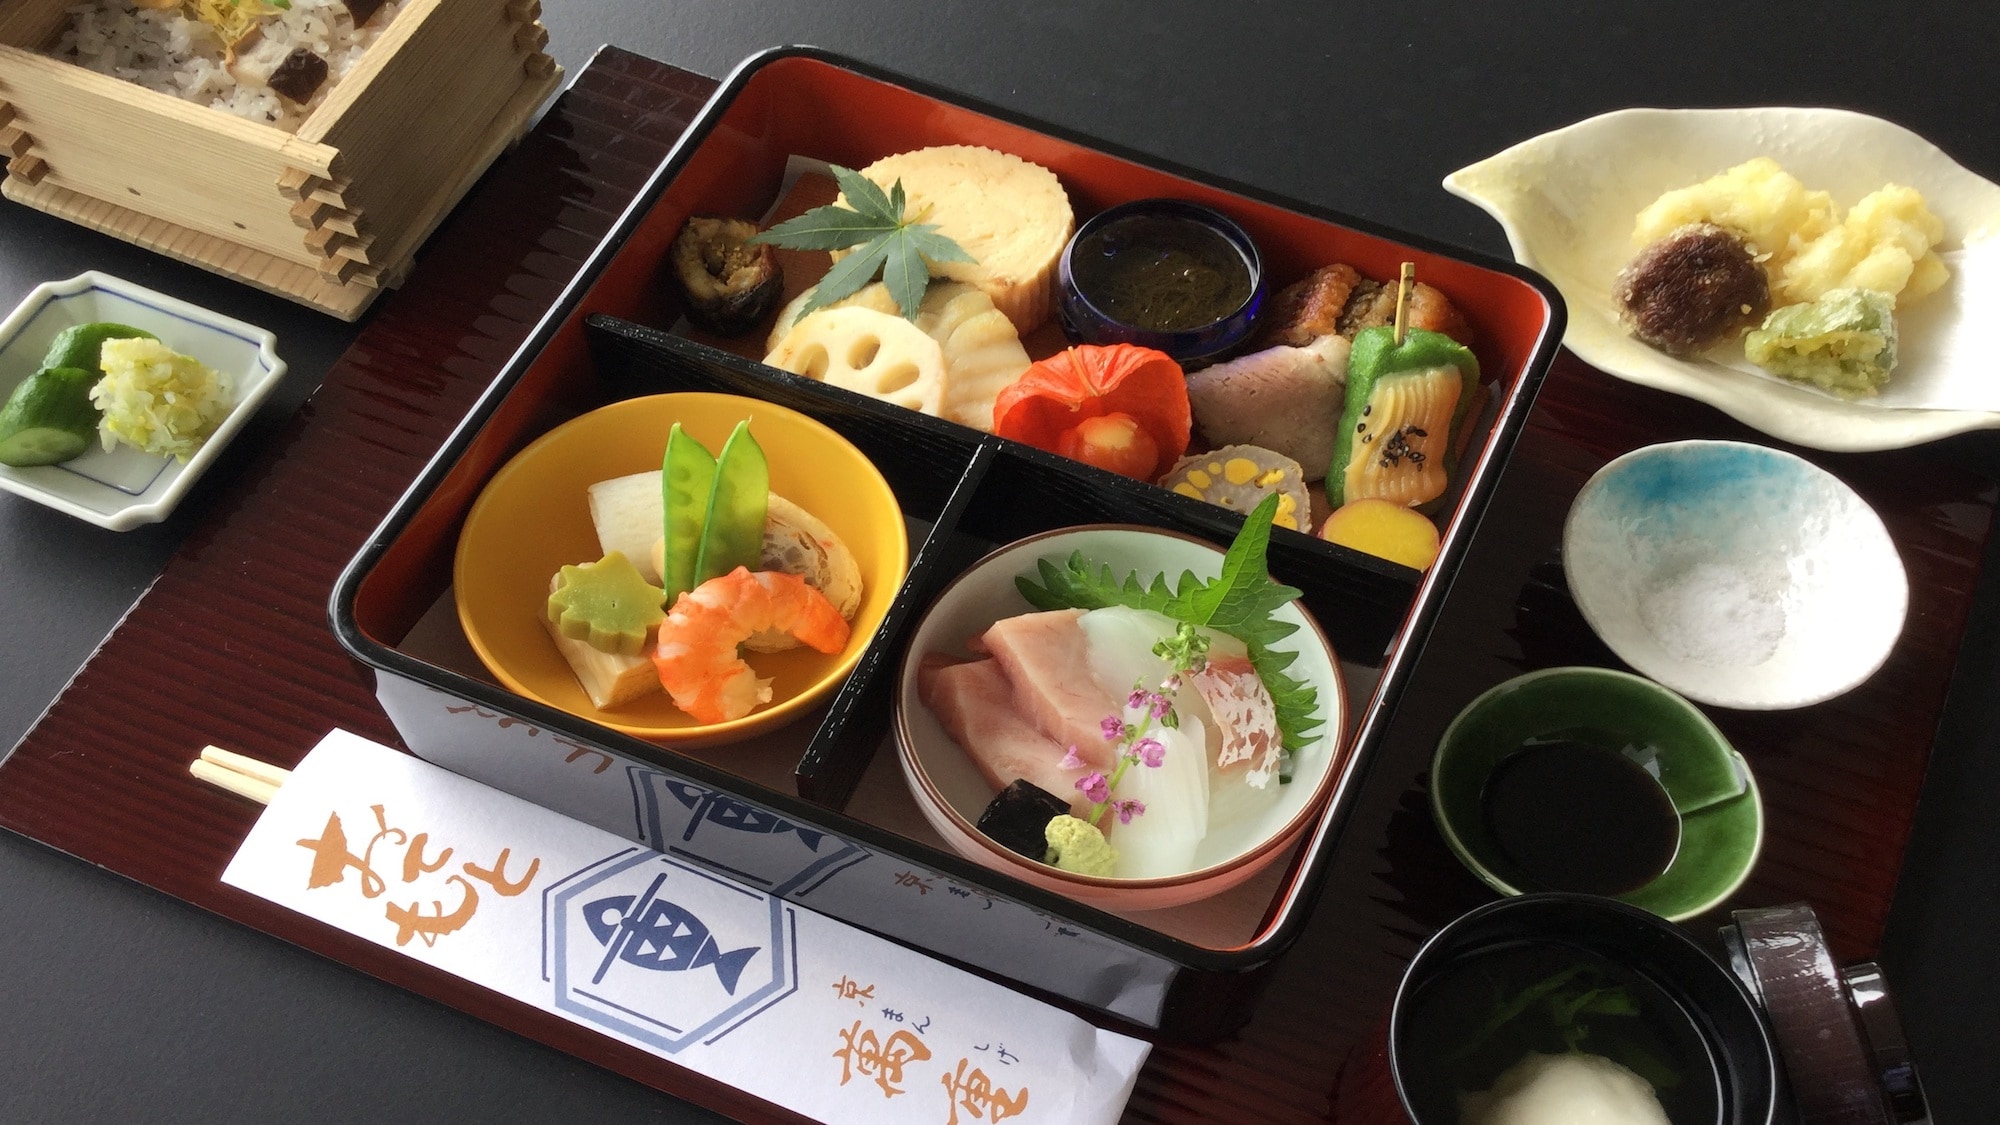 《Supper》 -Kyoto Cuisine Manju-